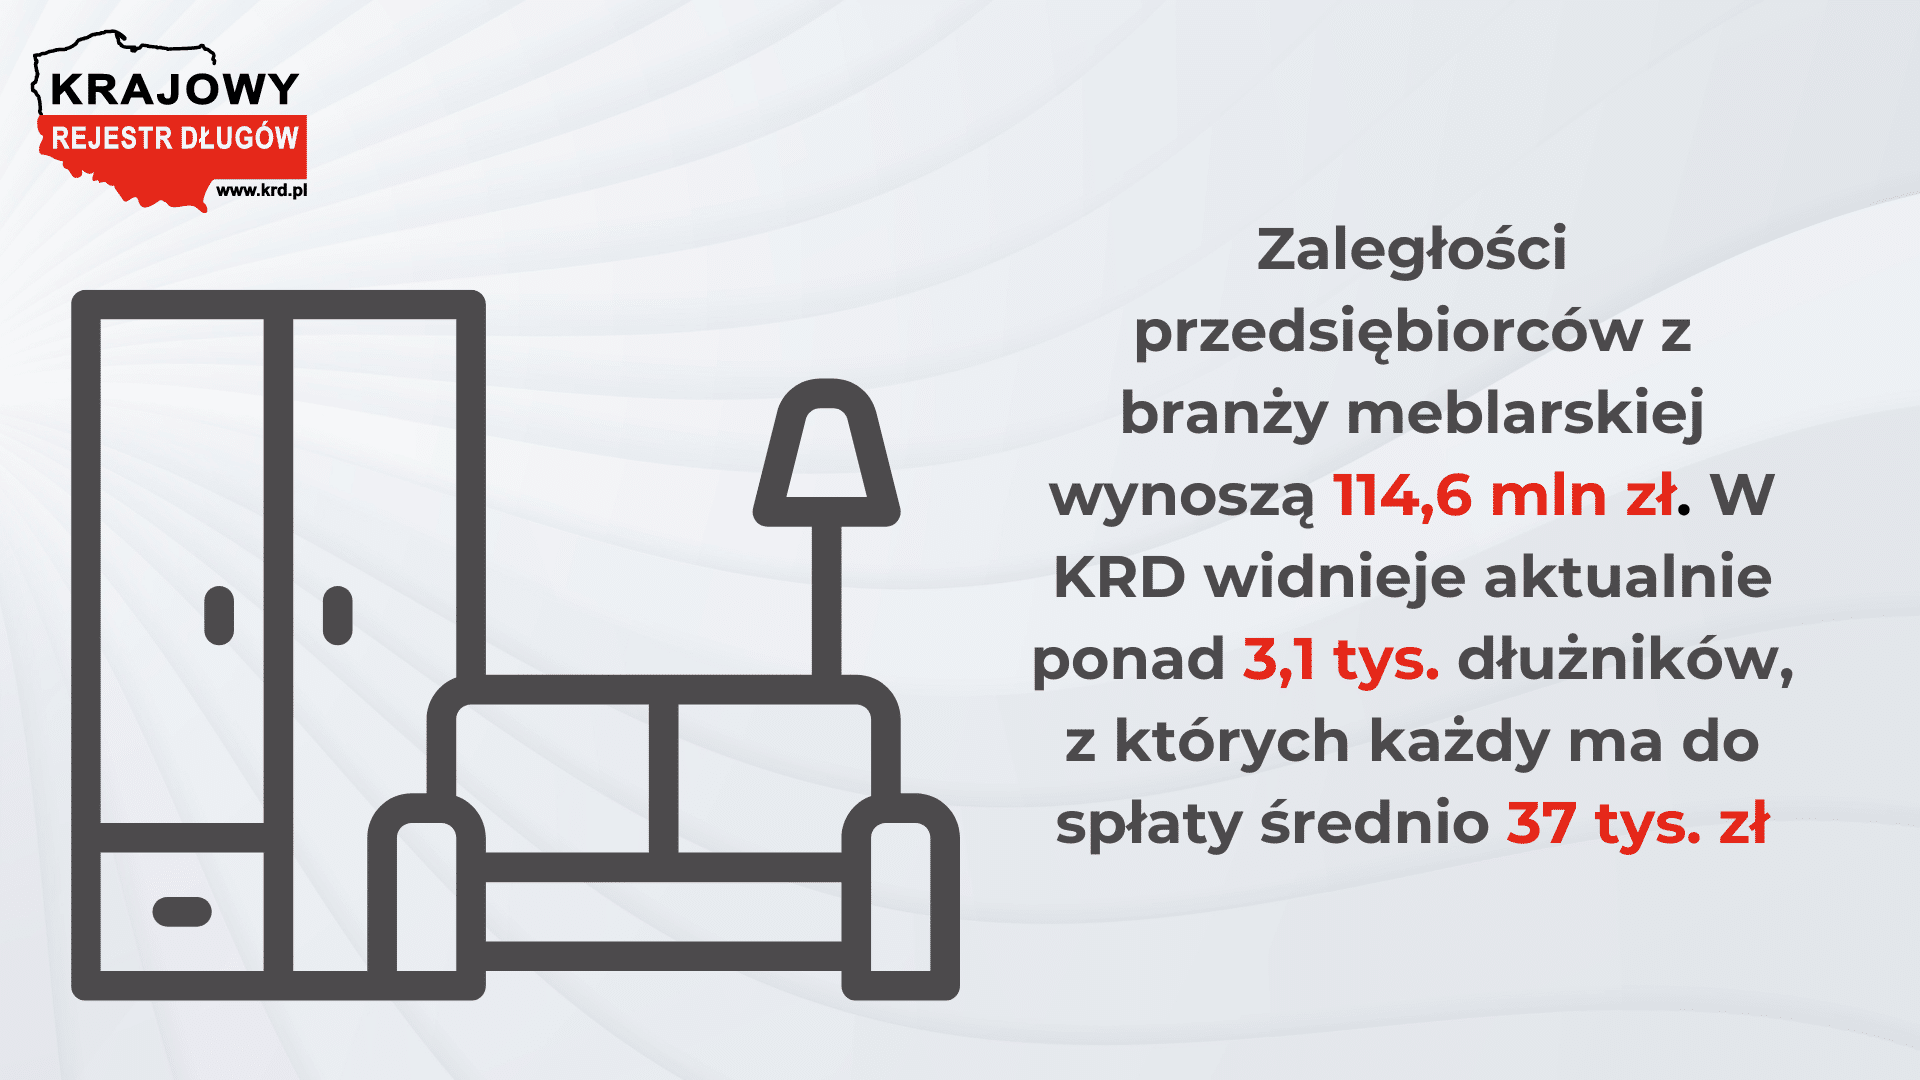 Polska branża meblarska silny eksport, ale spadająca wiarygodność płatnicza